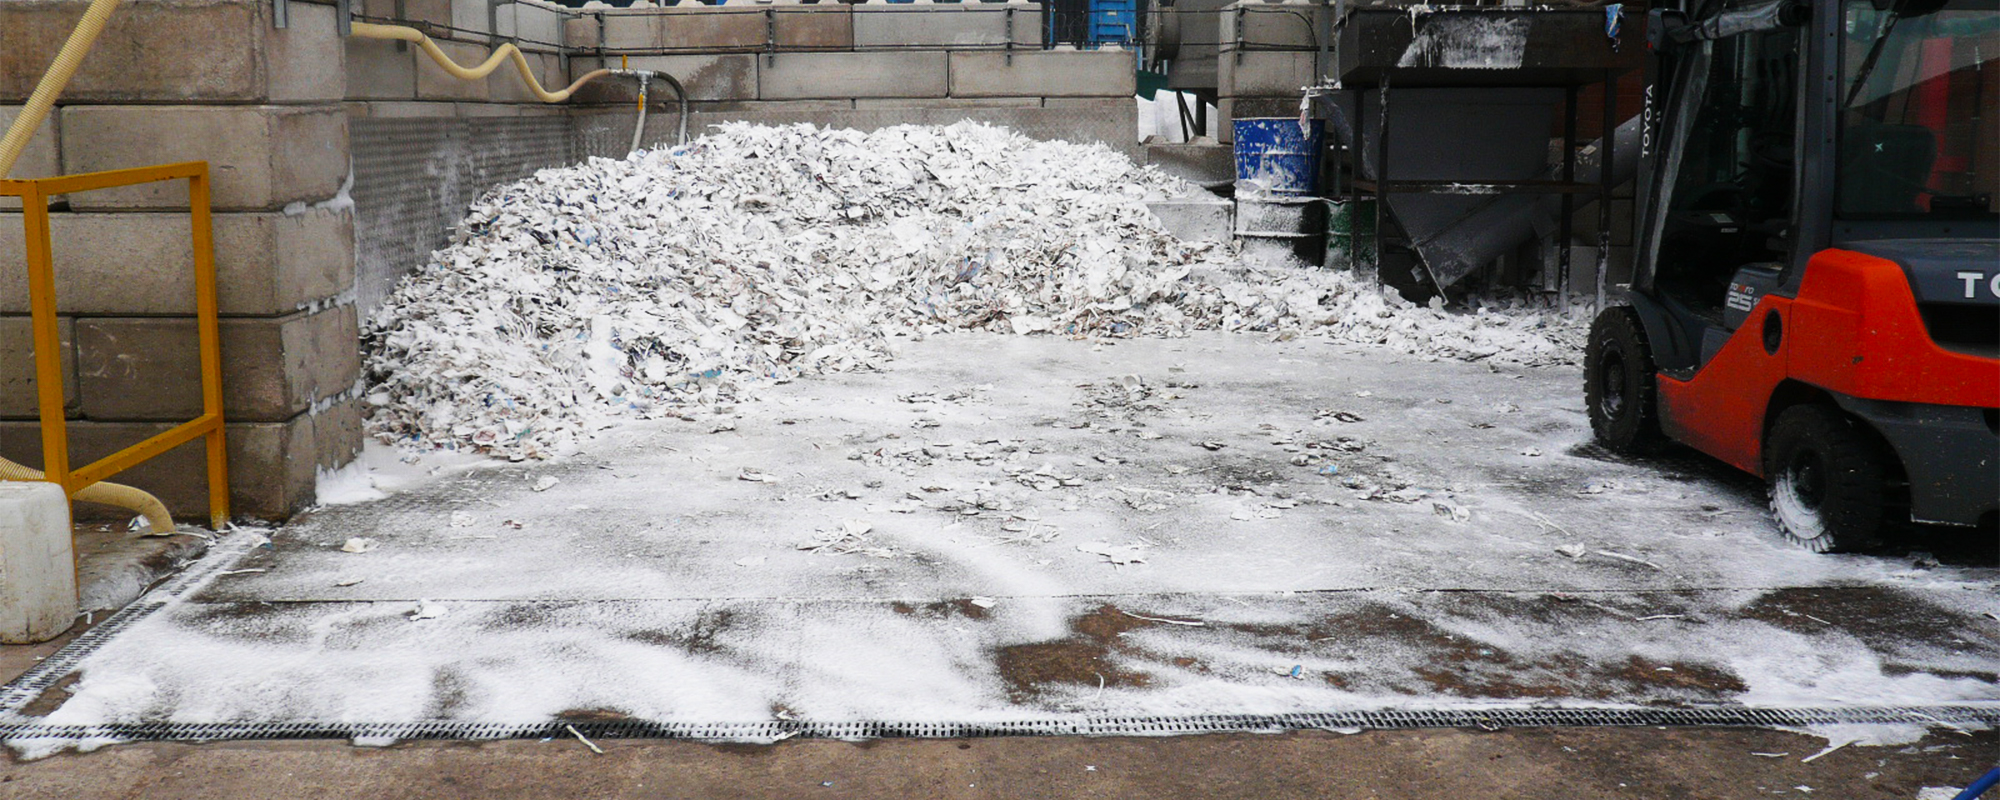 image-slider-foam-cover-rubbish-pile-bay-forklift